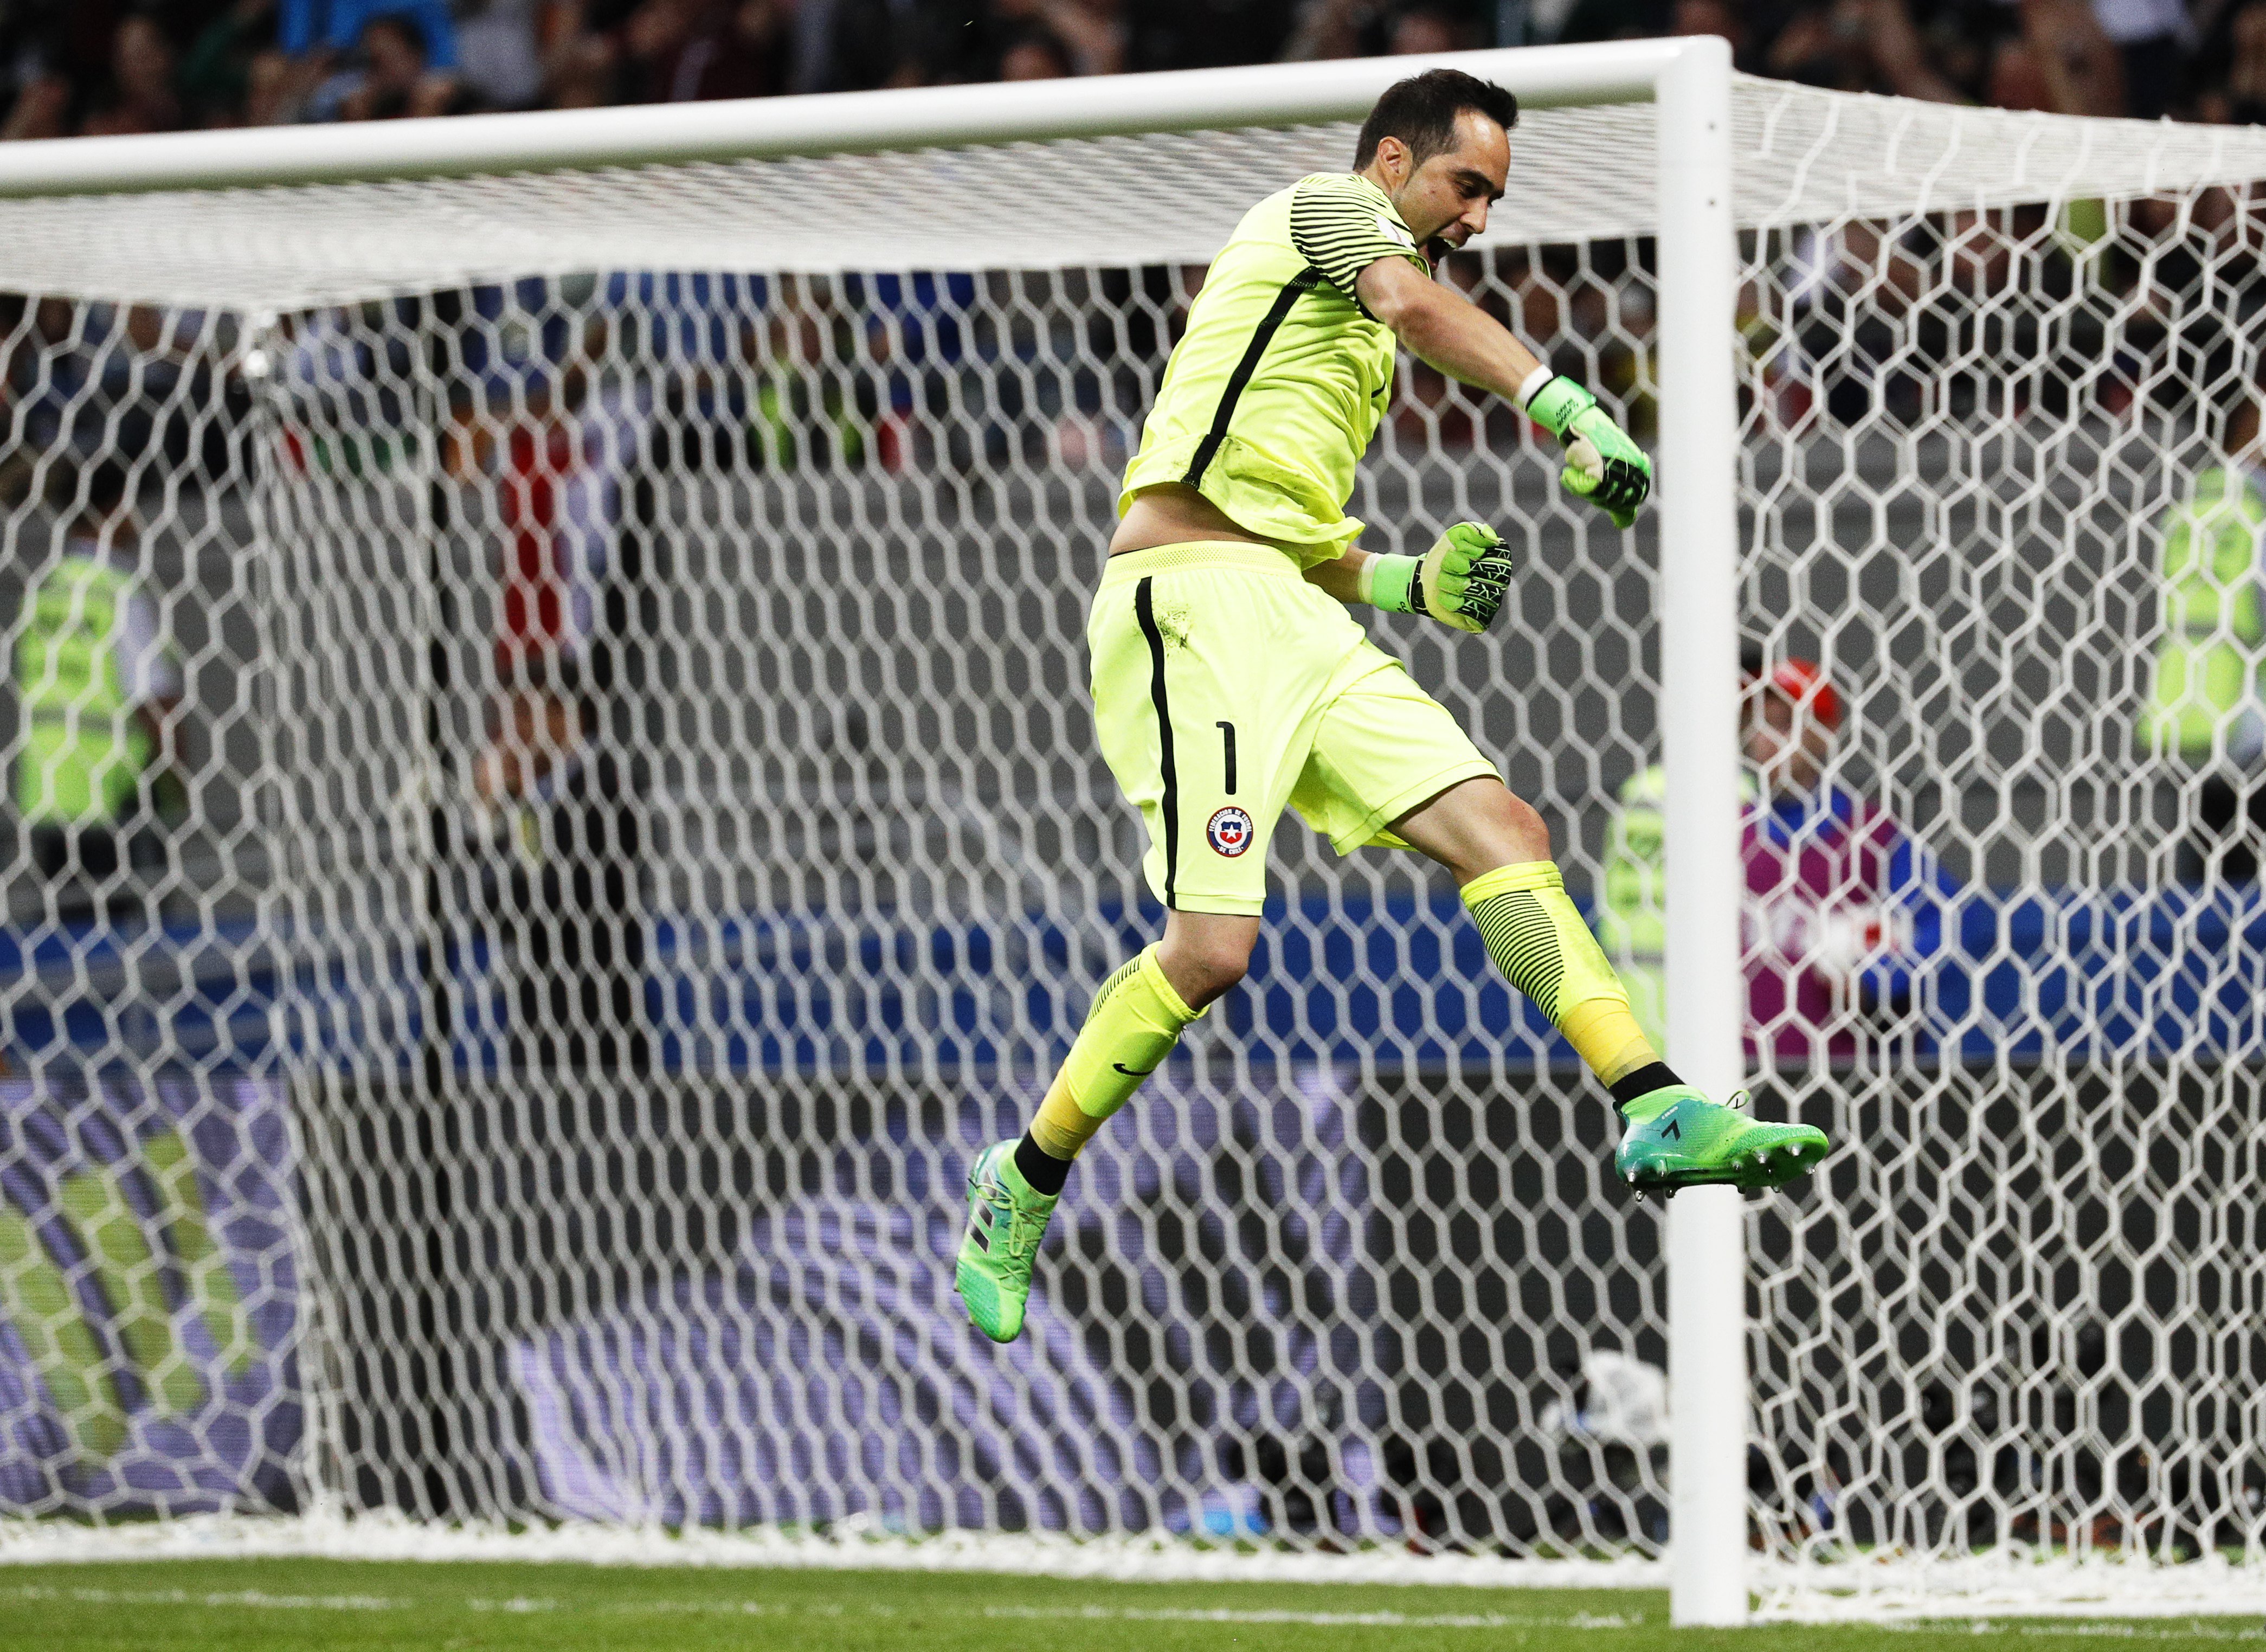 Bravo elimina Portugal als penals i porta Xile a la final (0-0)